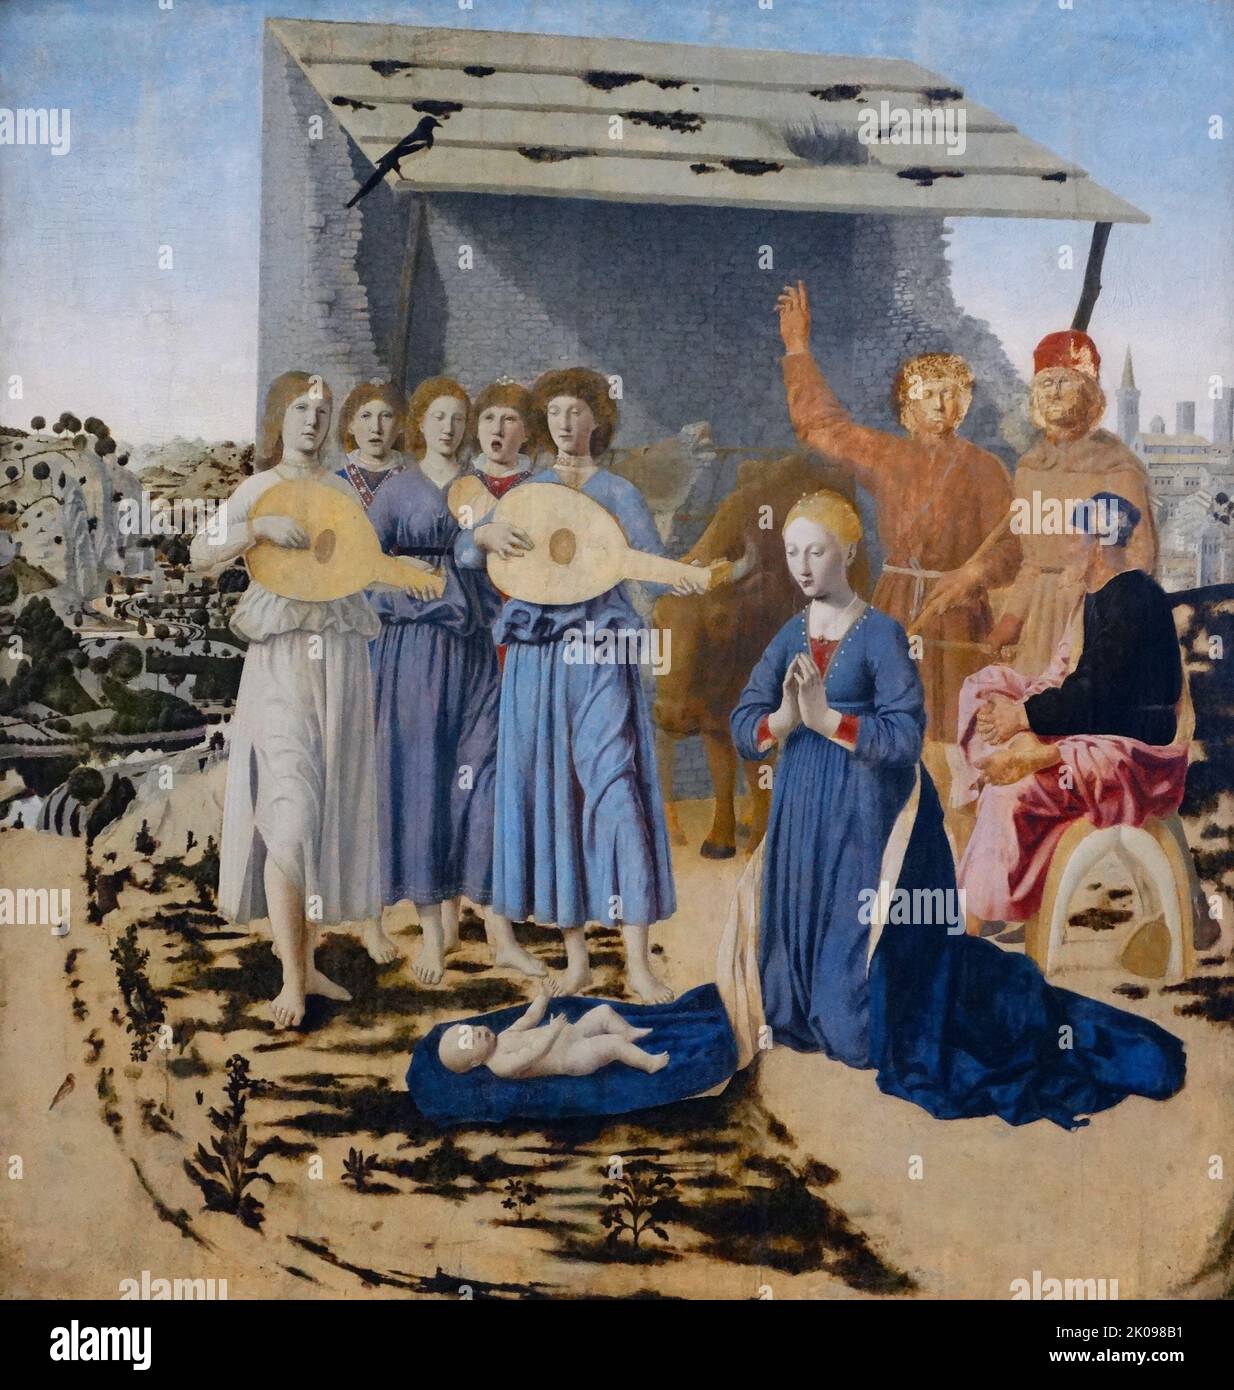 La Nativité par Piero del Fransesca. La Nativité est une peinture à l'huile de l'artiste italien Piero della Francesca, datant de 1470-75. La peinture dépeint une scène de la naissance de Jésus, et est l'une des plus récentes peintures vivantes faites par l'artiste avant sa mort en 1492. Banque D'Images